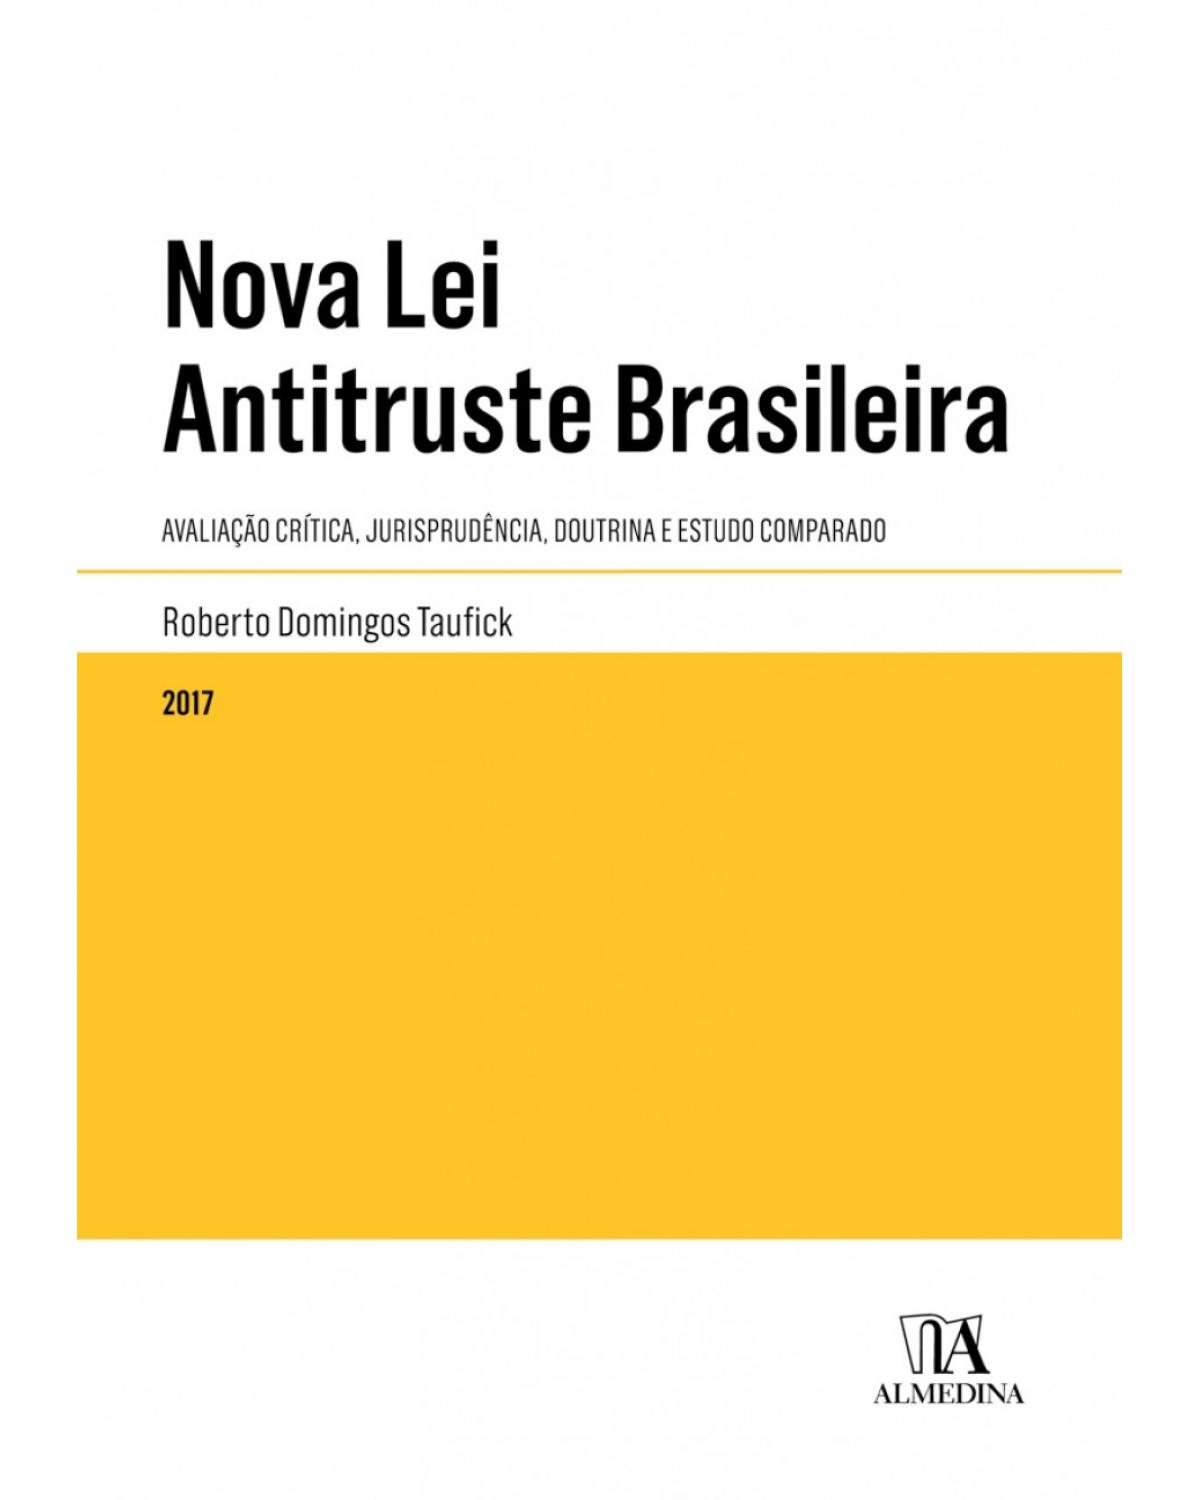 Nova lei antitruste brasileira - Avaliação crítica, jurisprudência, doutrina e estudo comparado - 1ª Edição | 2017